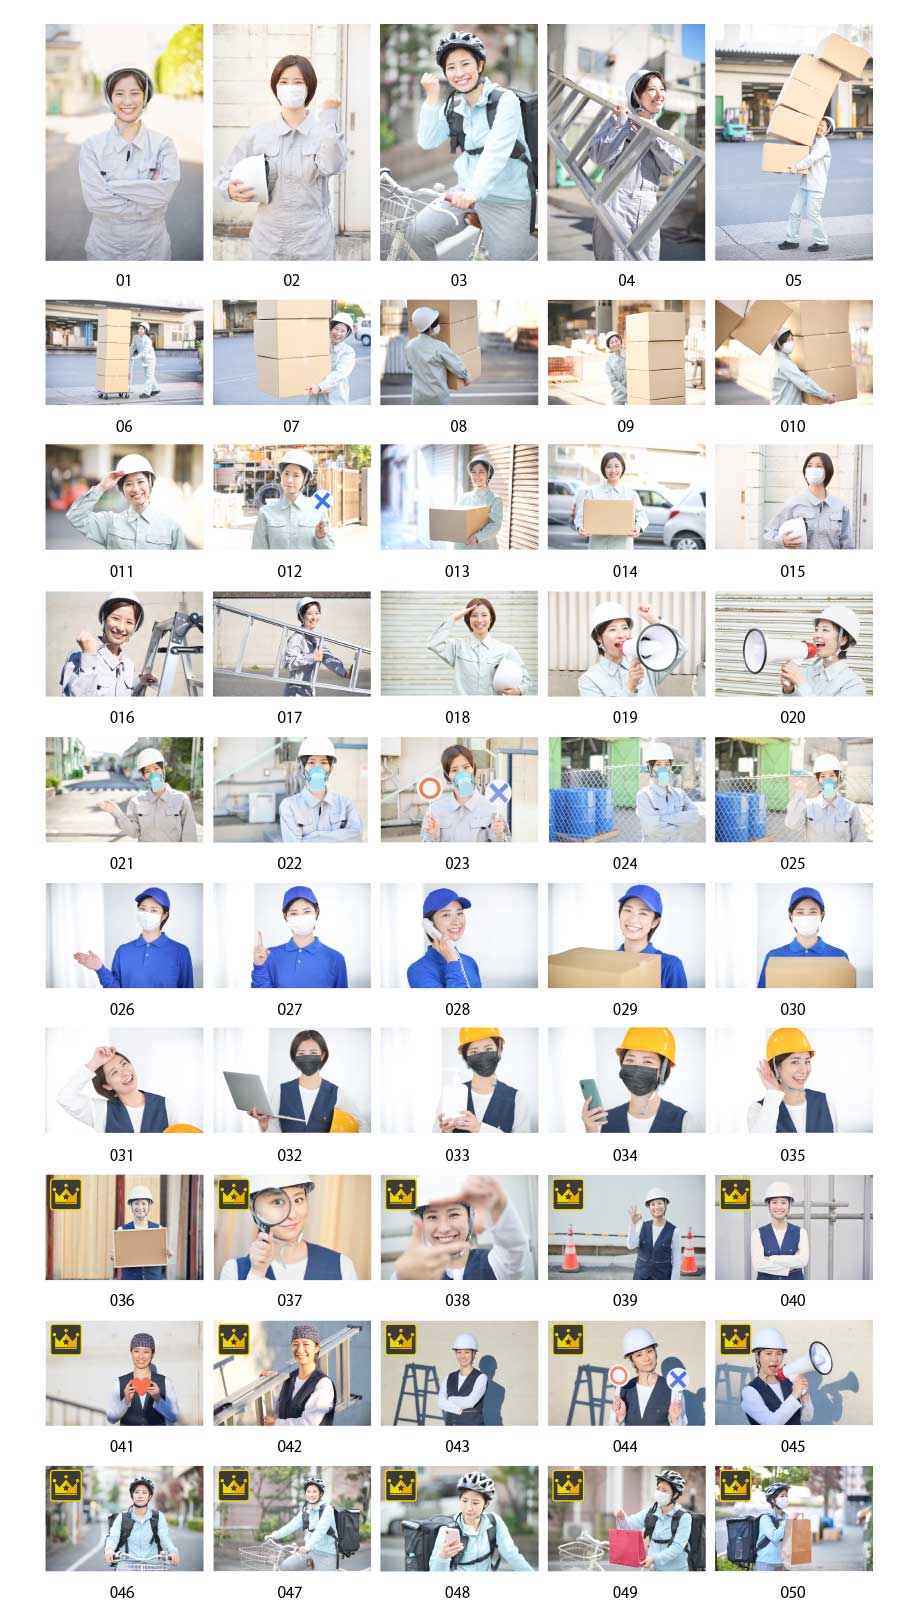 일하는 일본인 여성의 사진